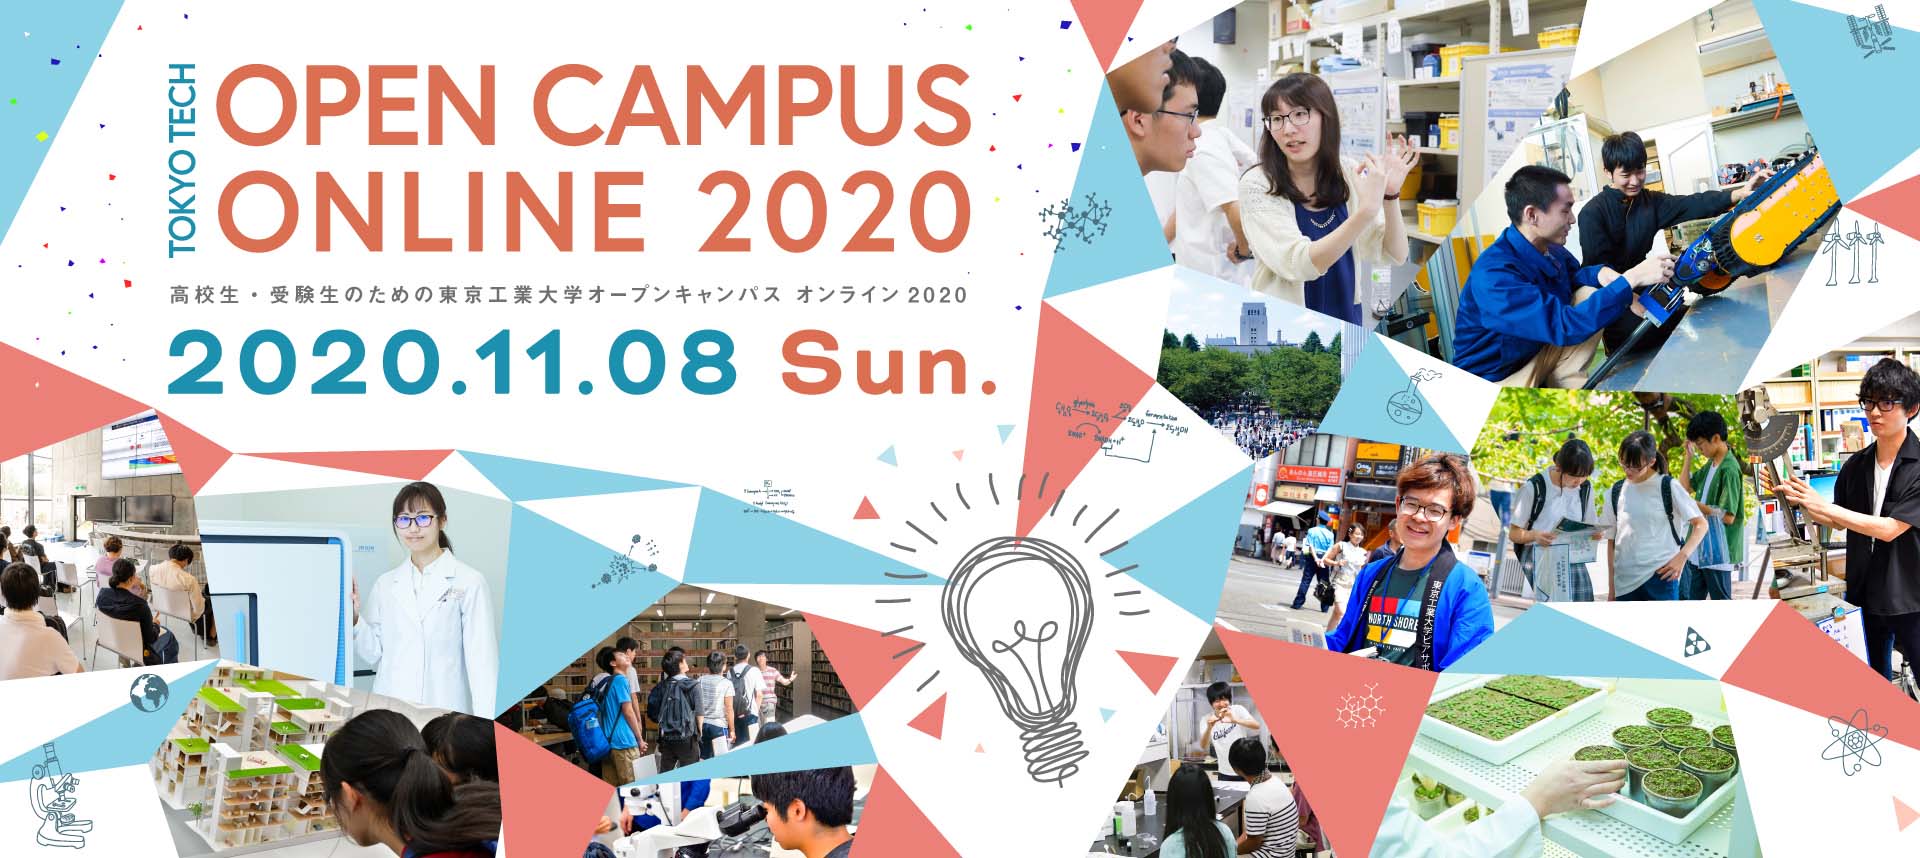 「東京工業大学オープンキャンパス オンライン2020」